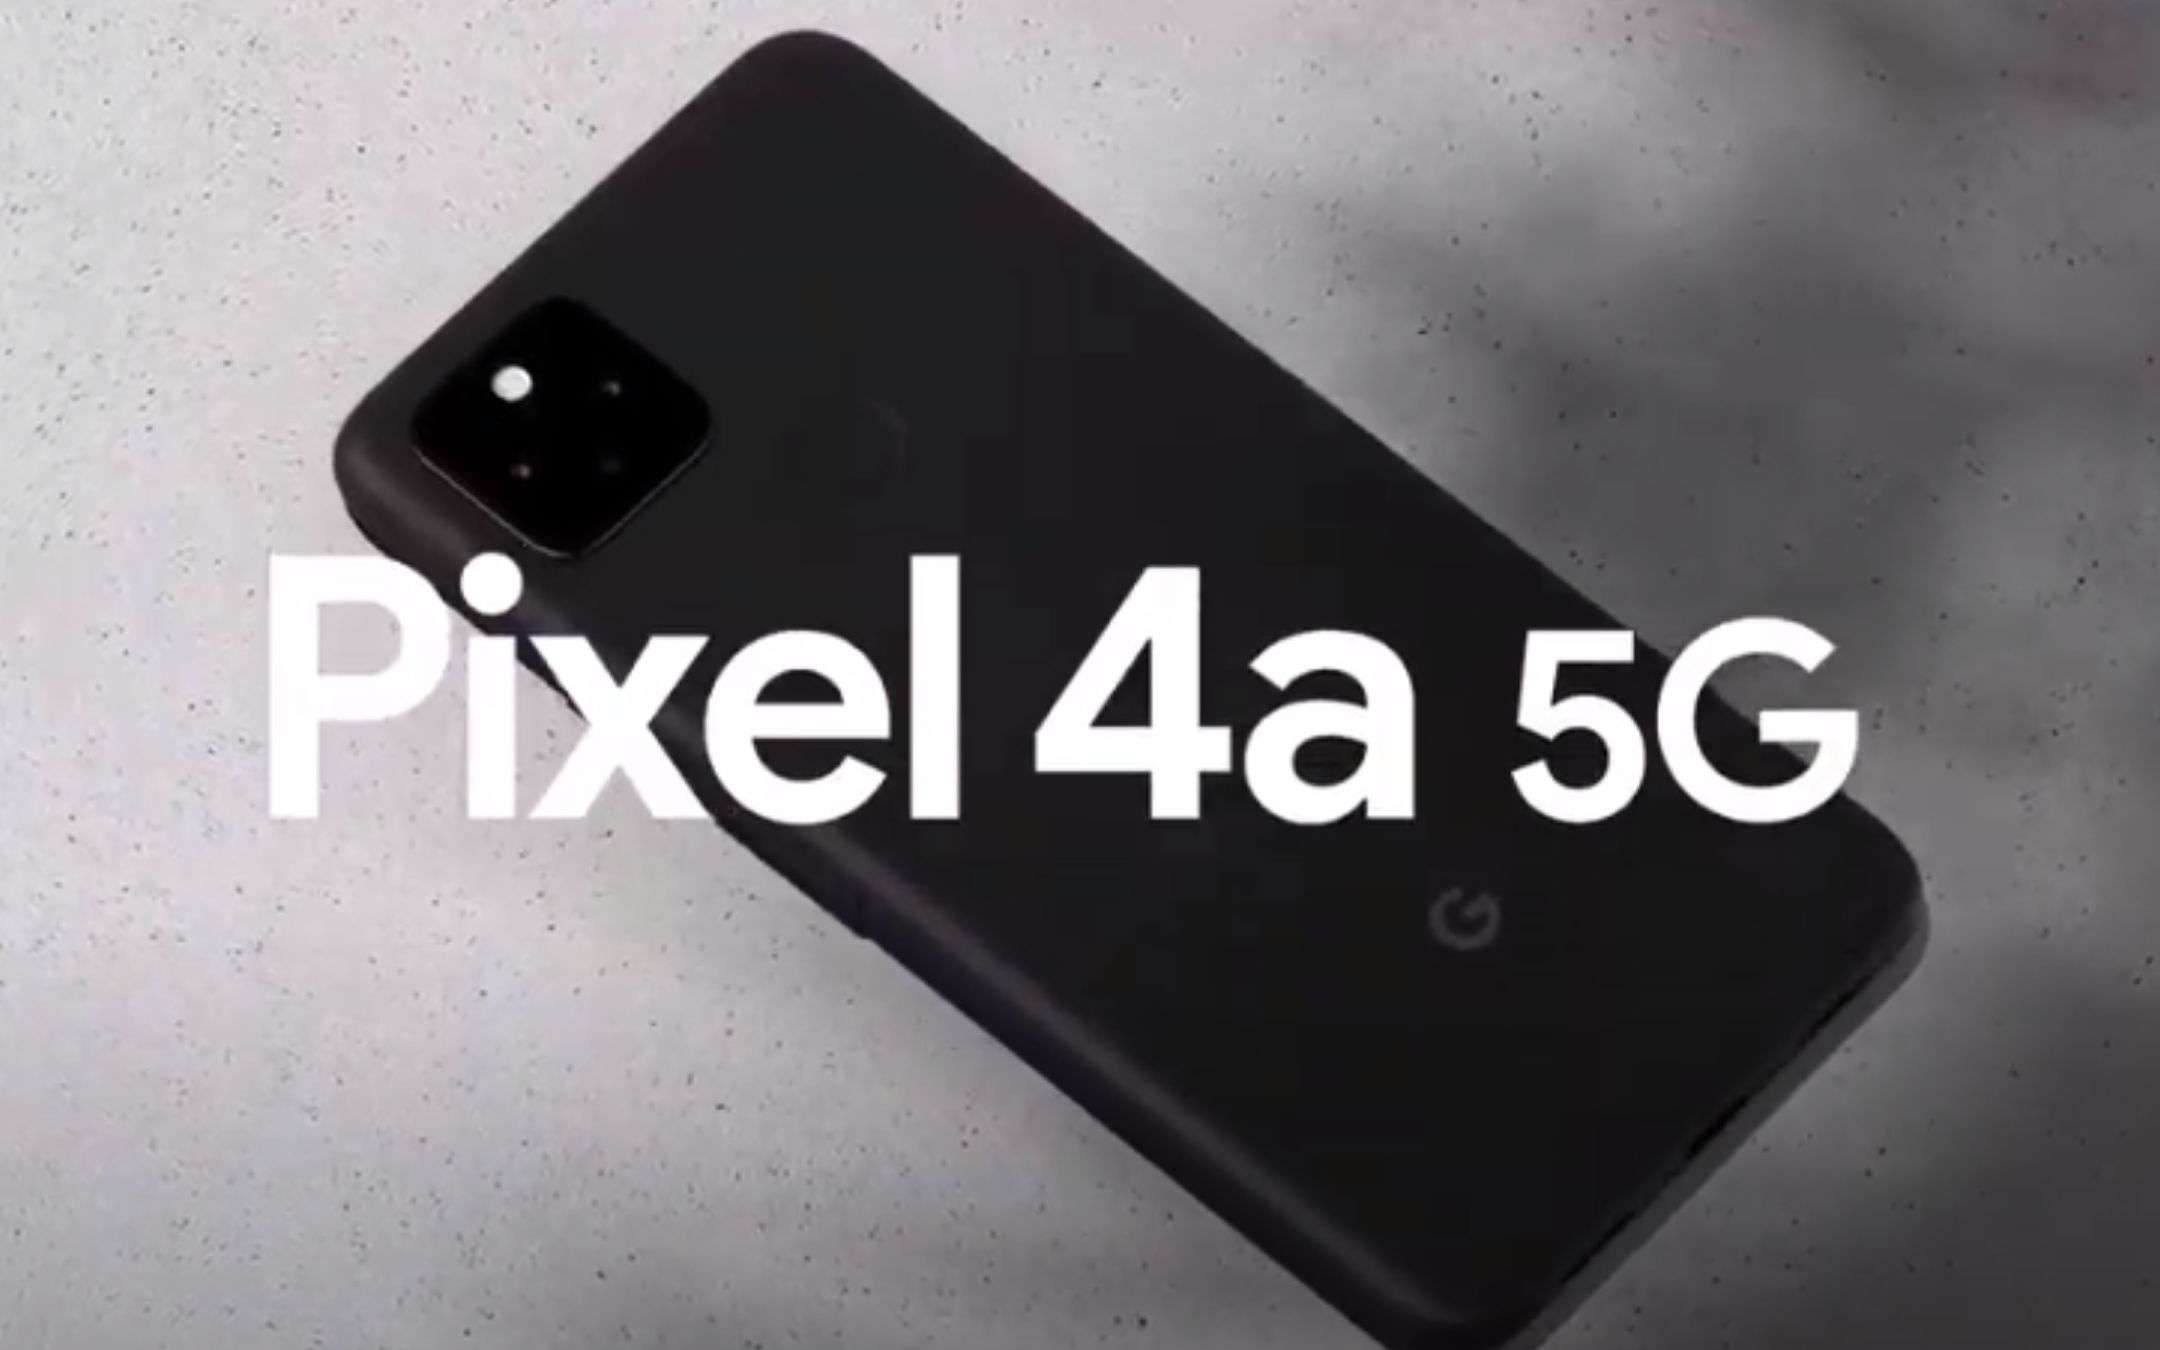 Pixel 4a 5G e Pixel 5 ufficiali: prezzo e dettagli